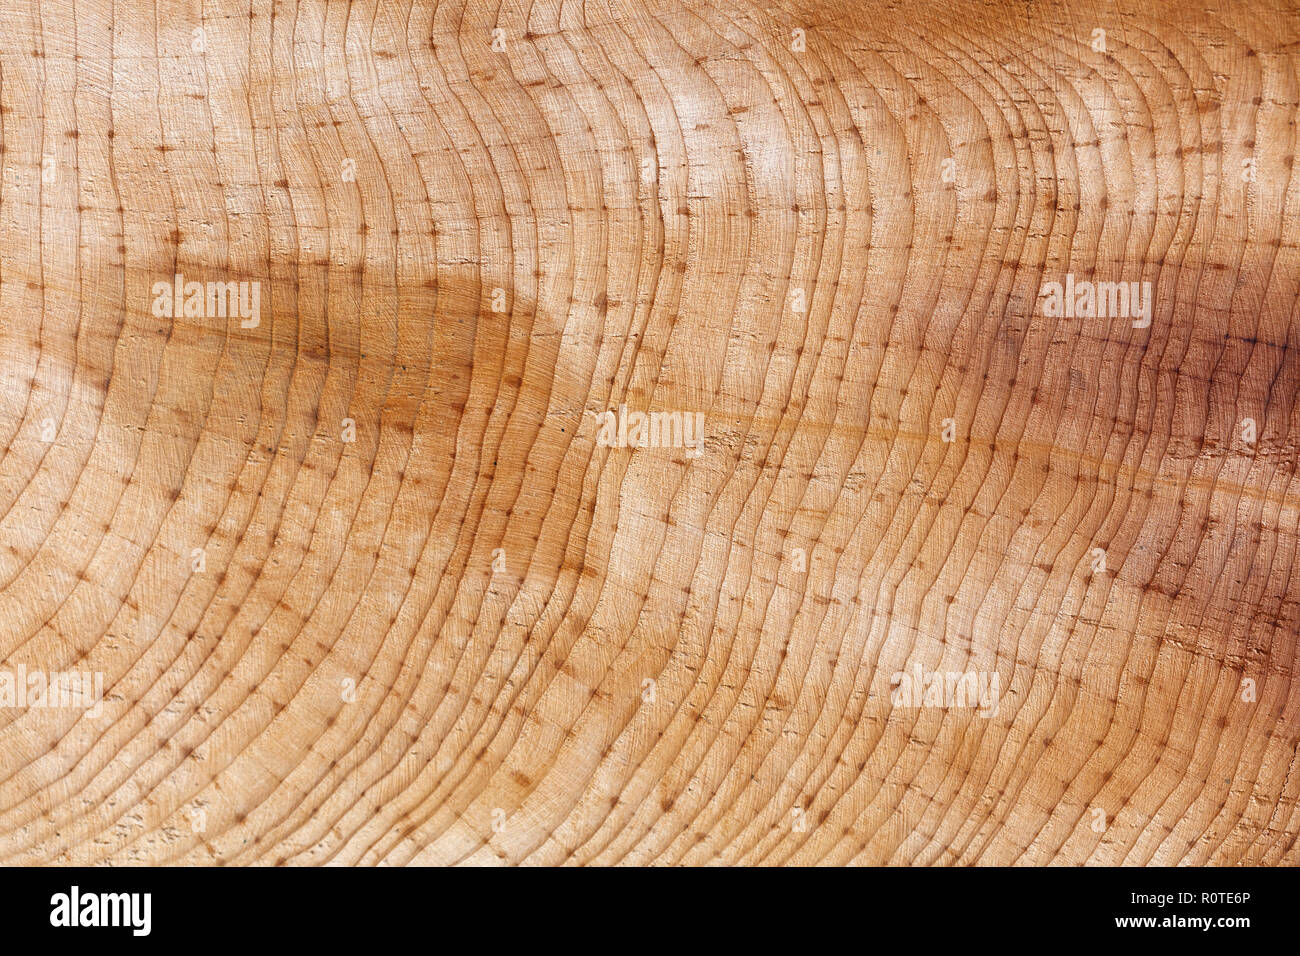 L'anneau bois texture background , close up. Banque D'Images